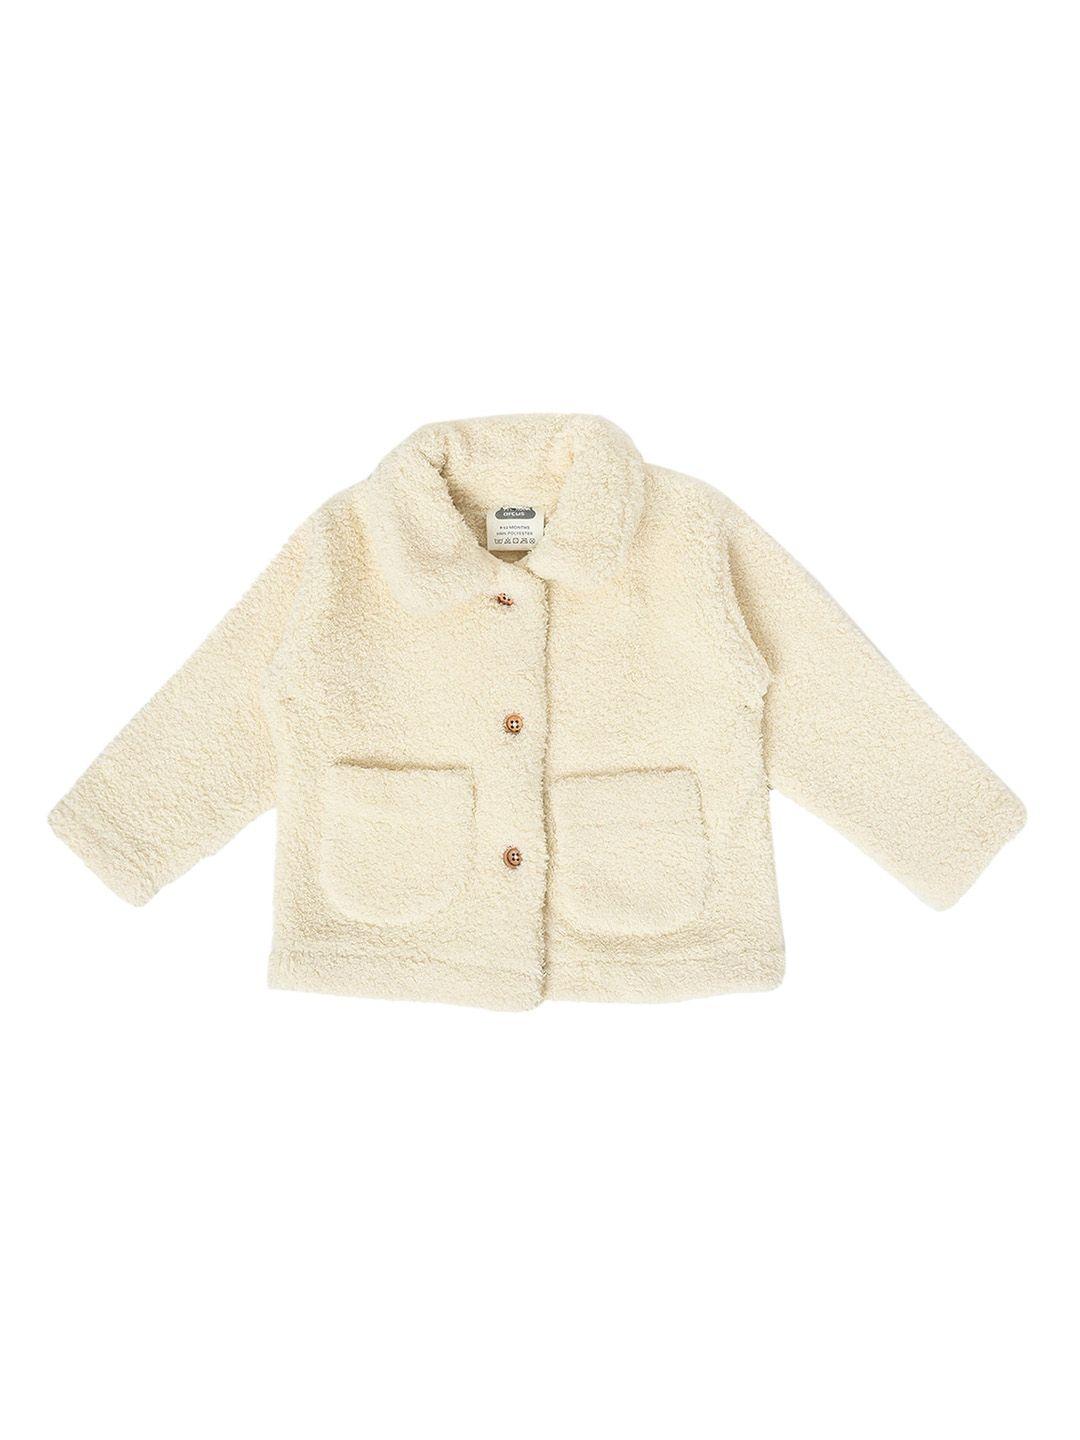 miarcus kids spread collar lightweight cotton tailored jacket